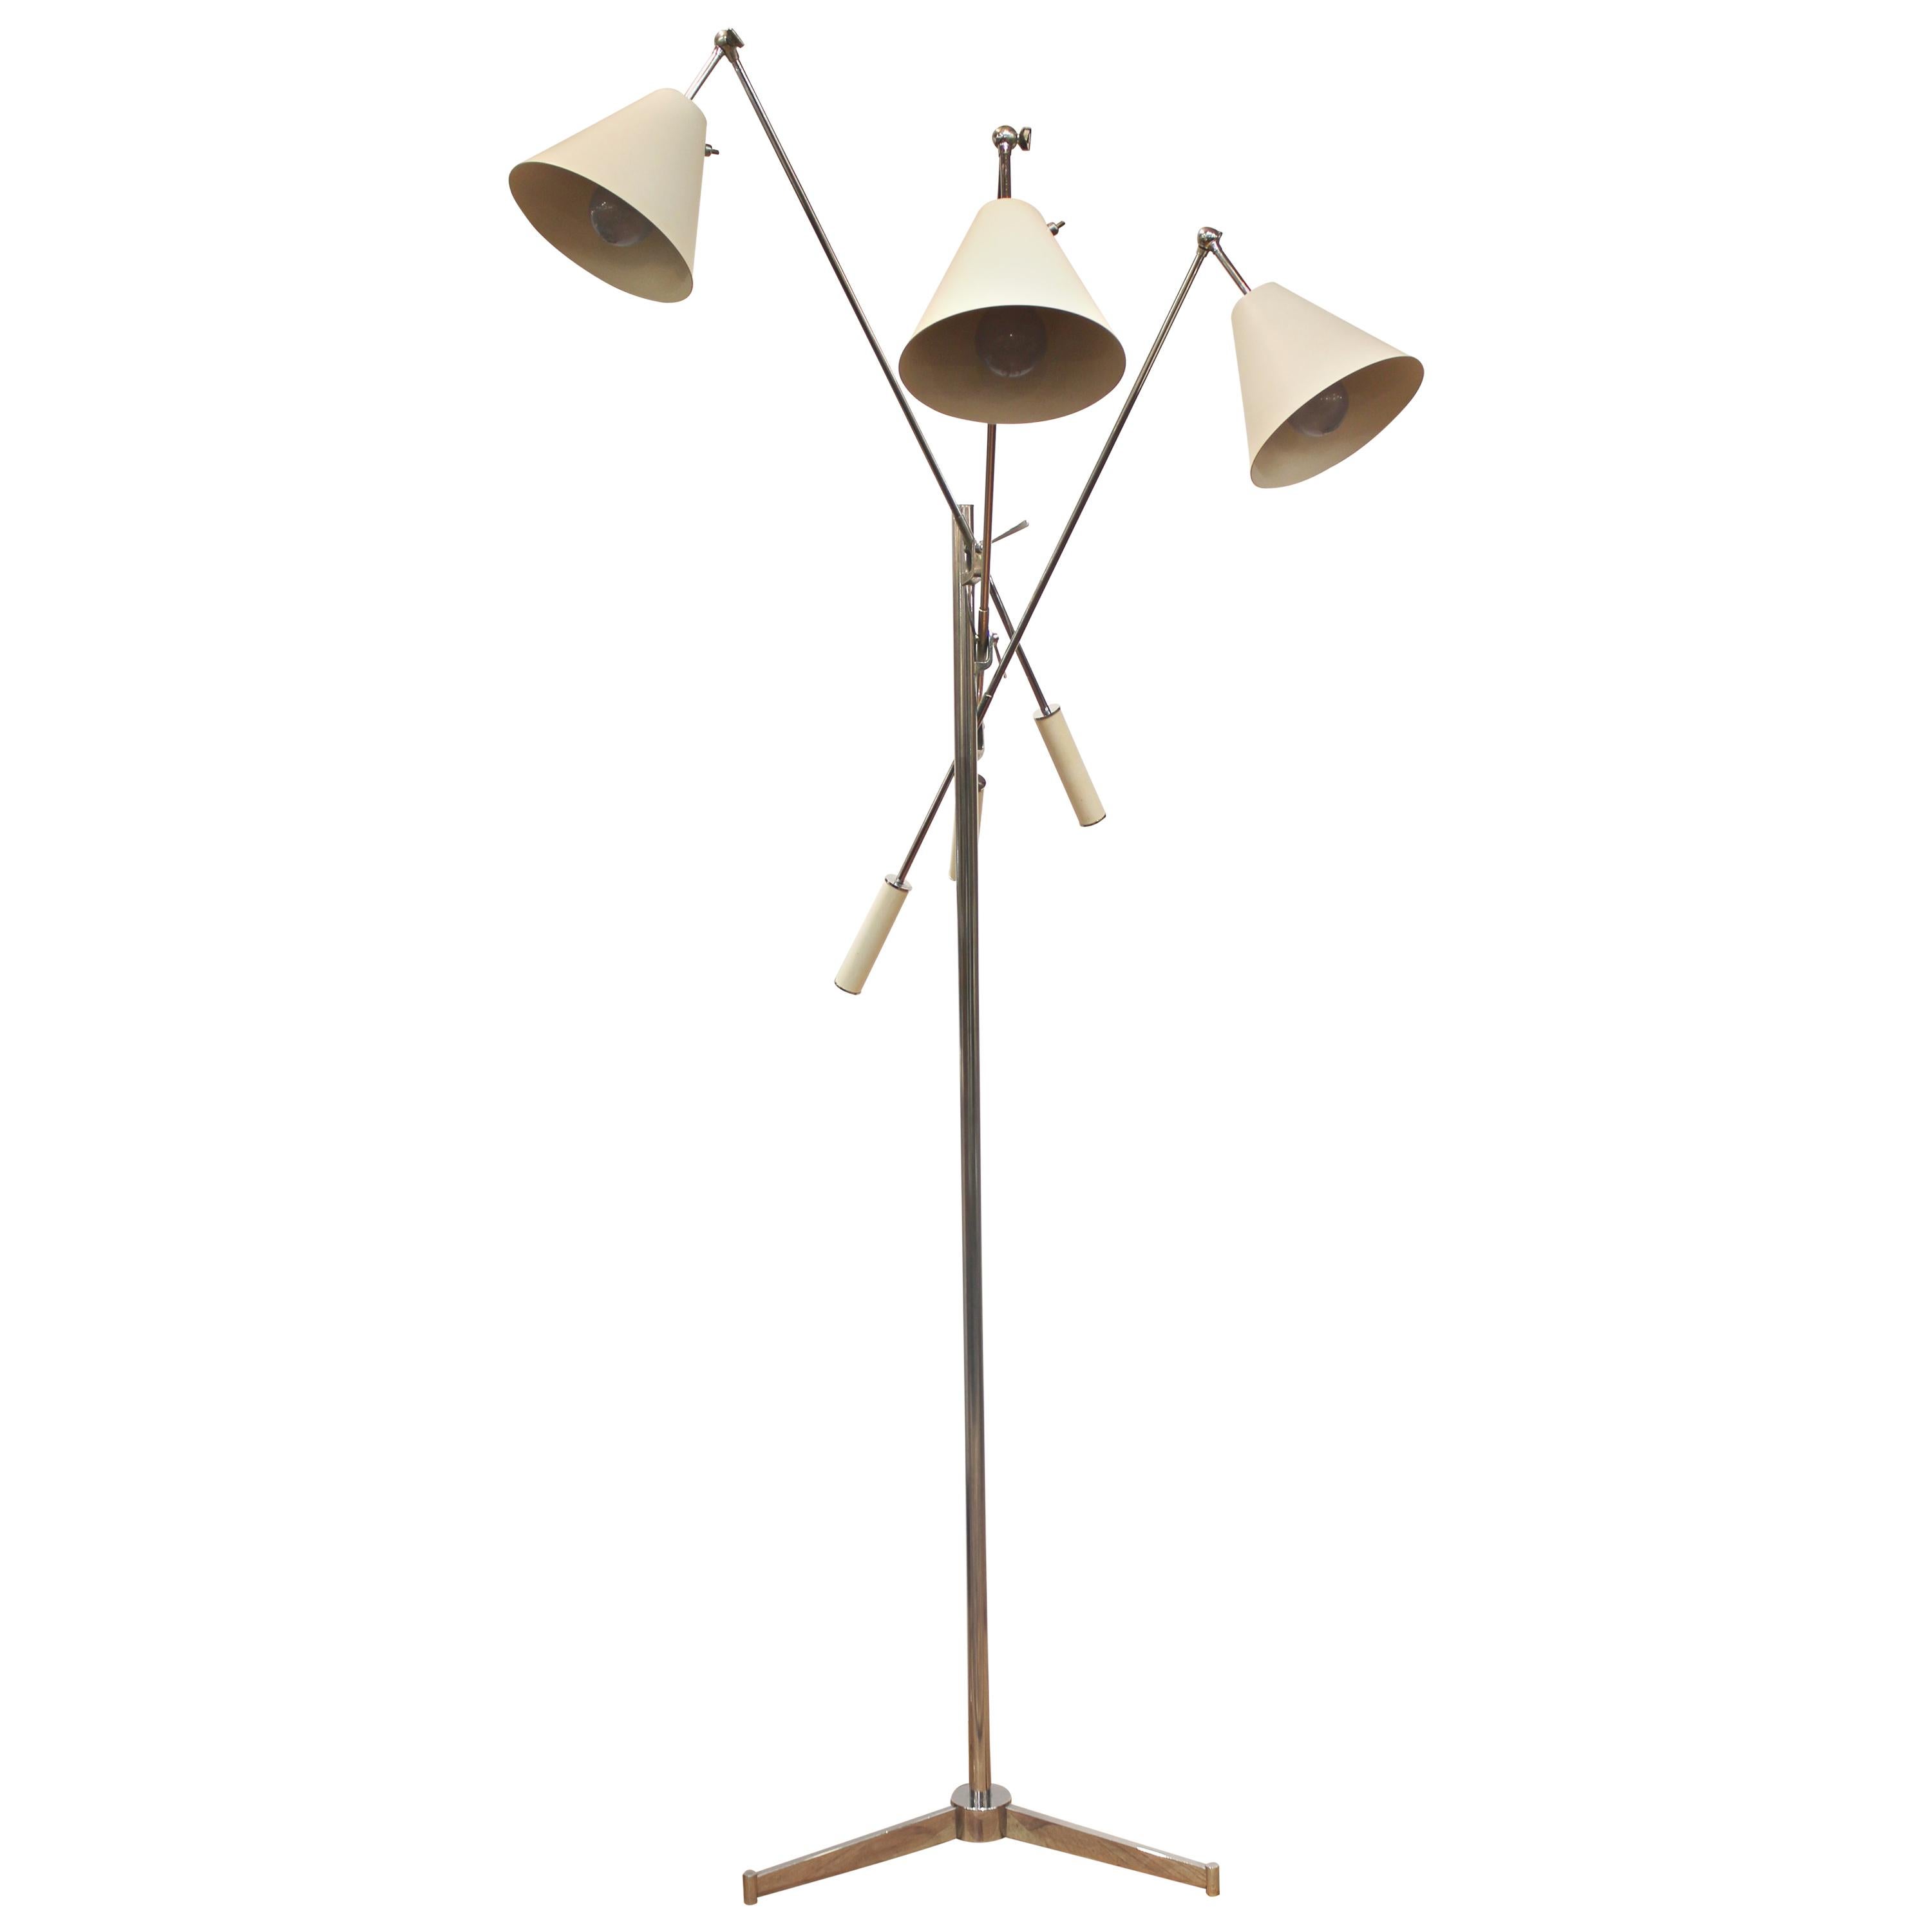 Arredoluce Italian Modern Triennale Floor Lamp